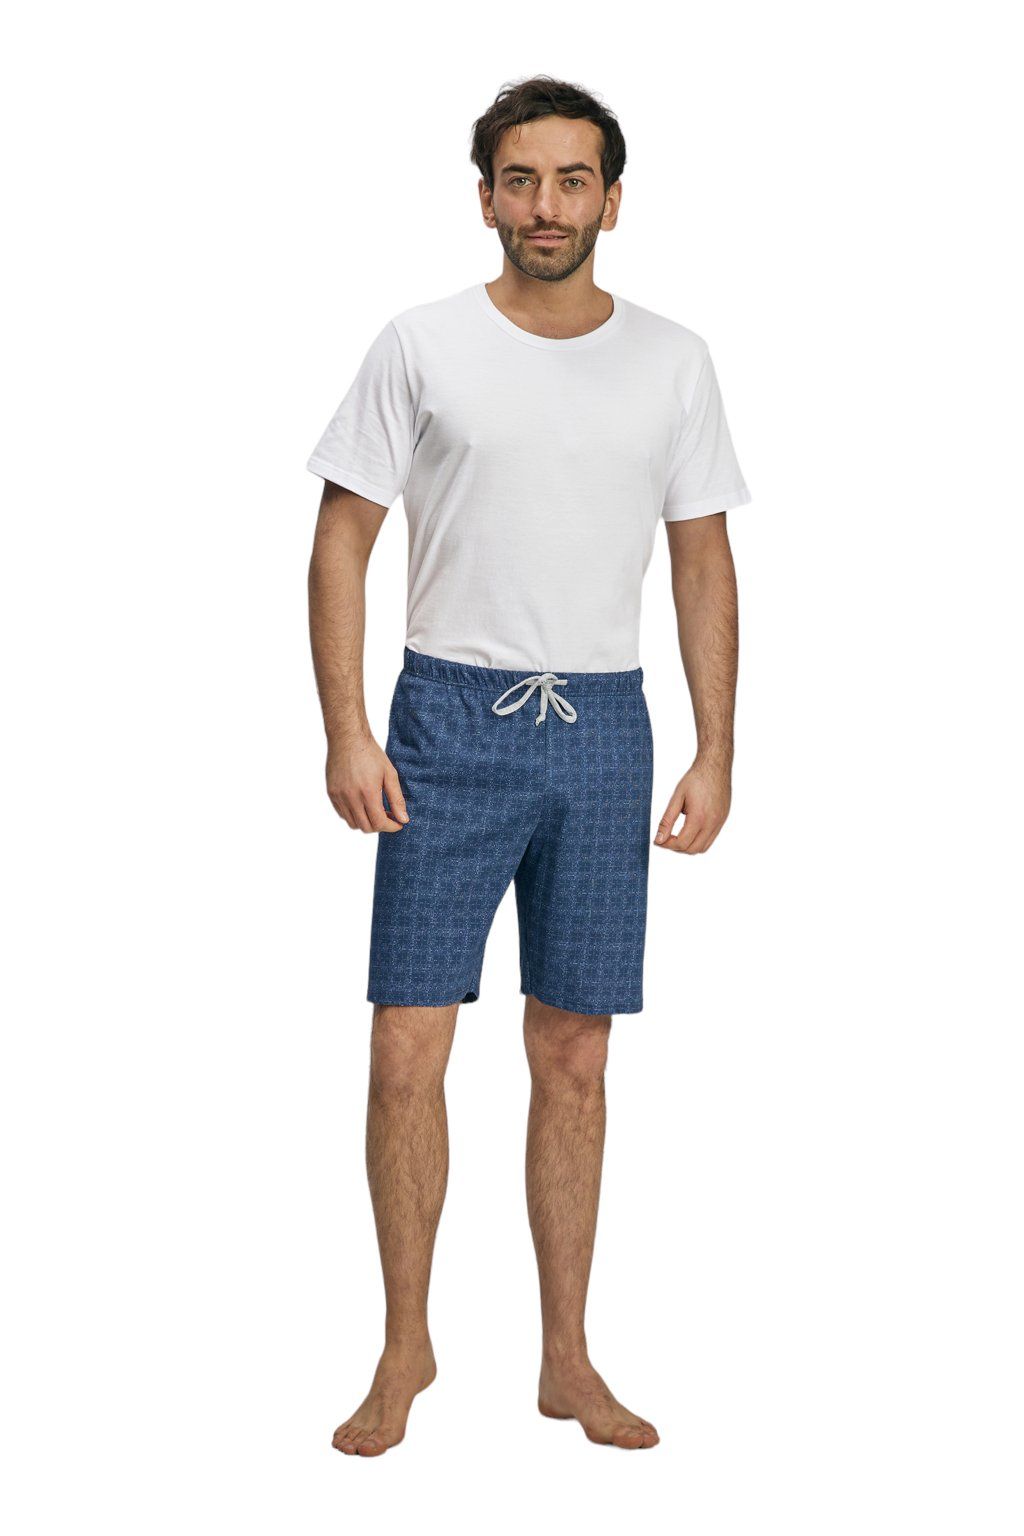 Pánské pyžamové kalhoty s krátkými nohavicemi, 204123 466, modrá - Velikost XL Wadima